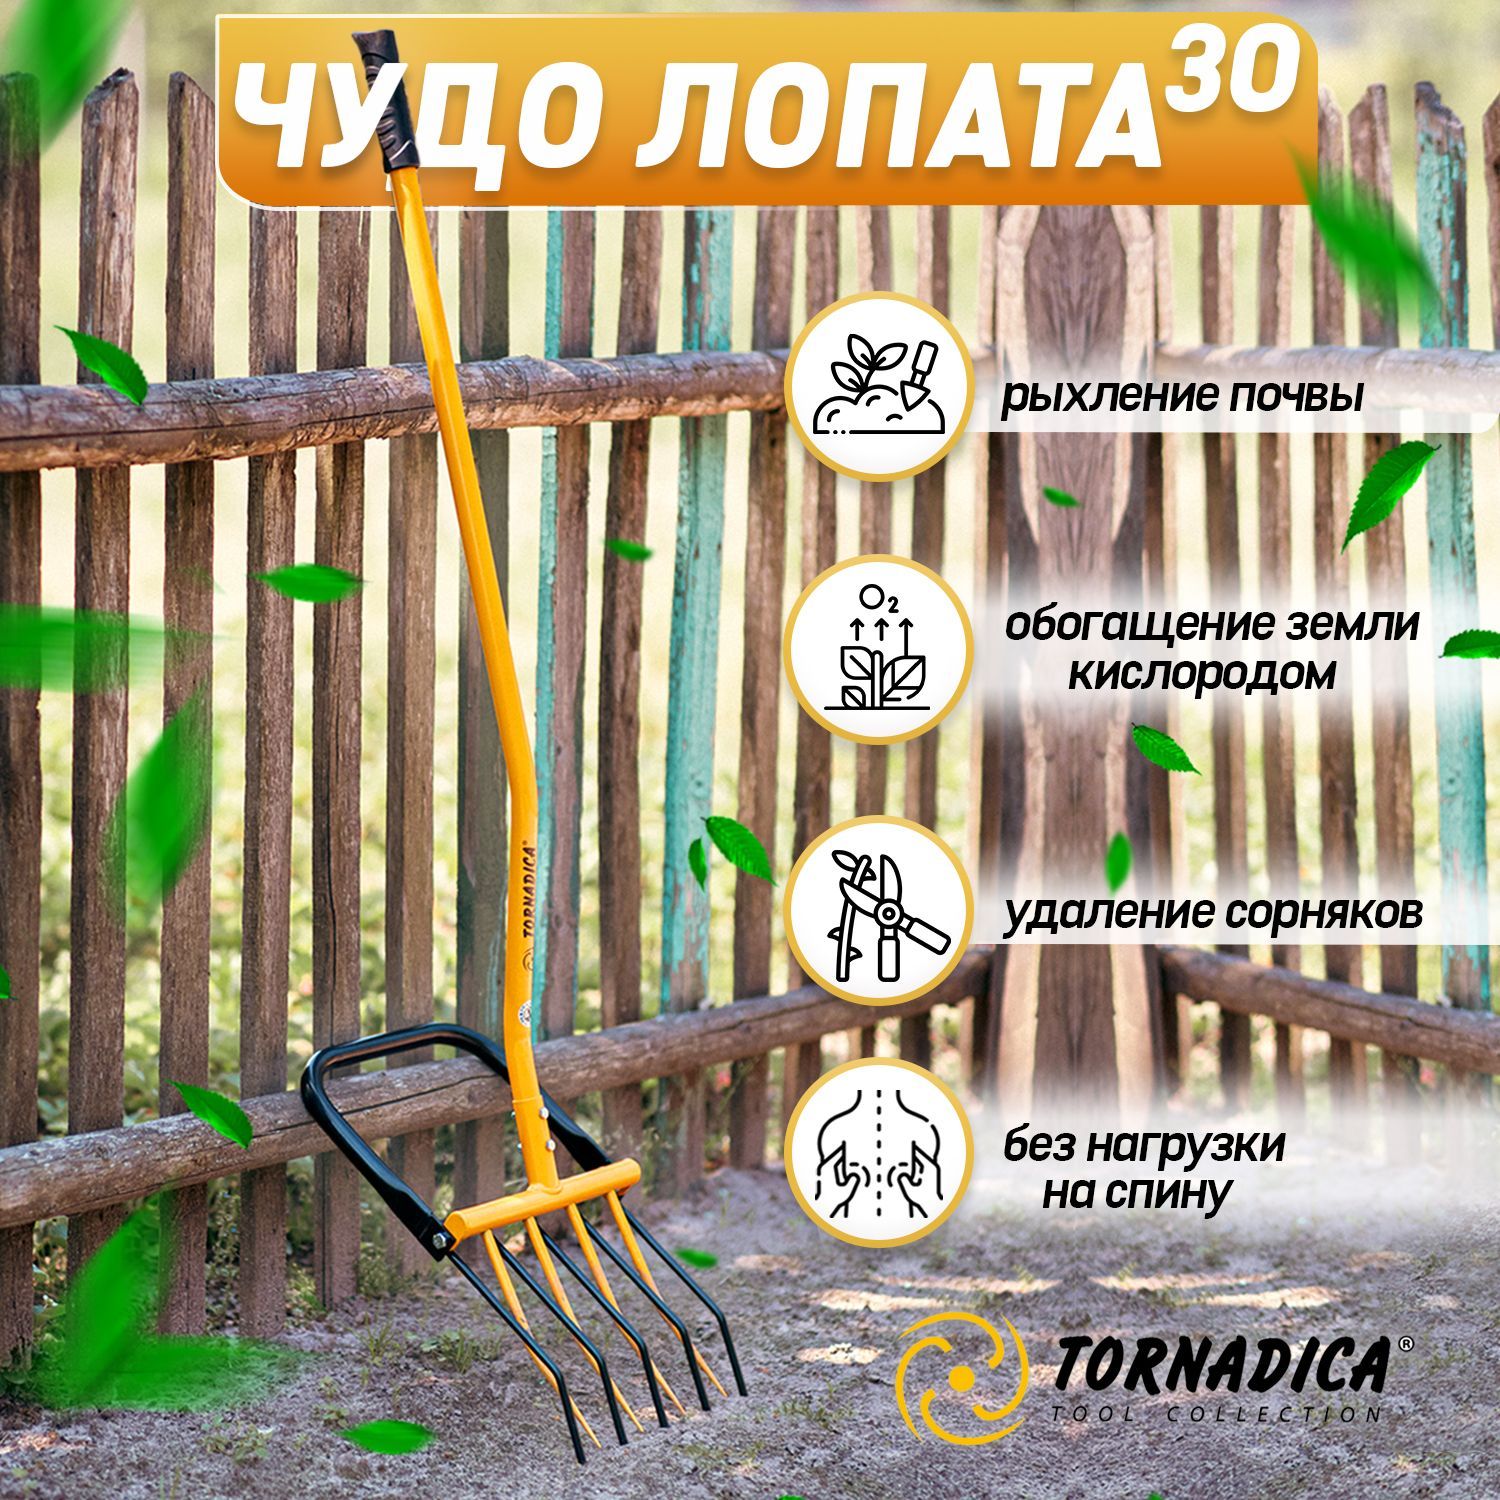 Аккумуляторные лопаты для уборки снега – купить в Москве недорого, цена в интернет-магазине